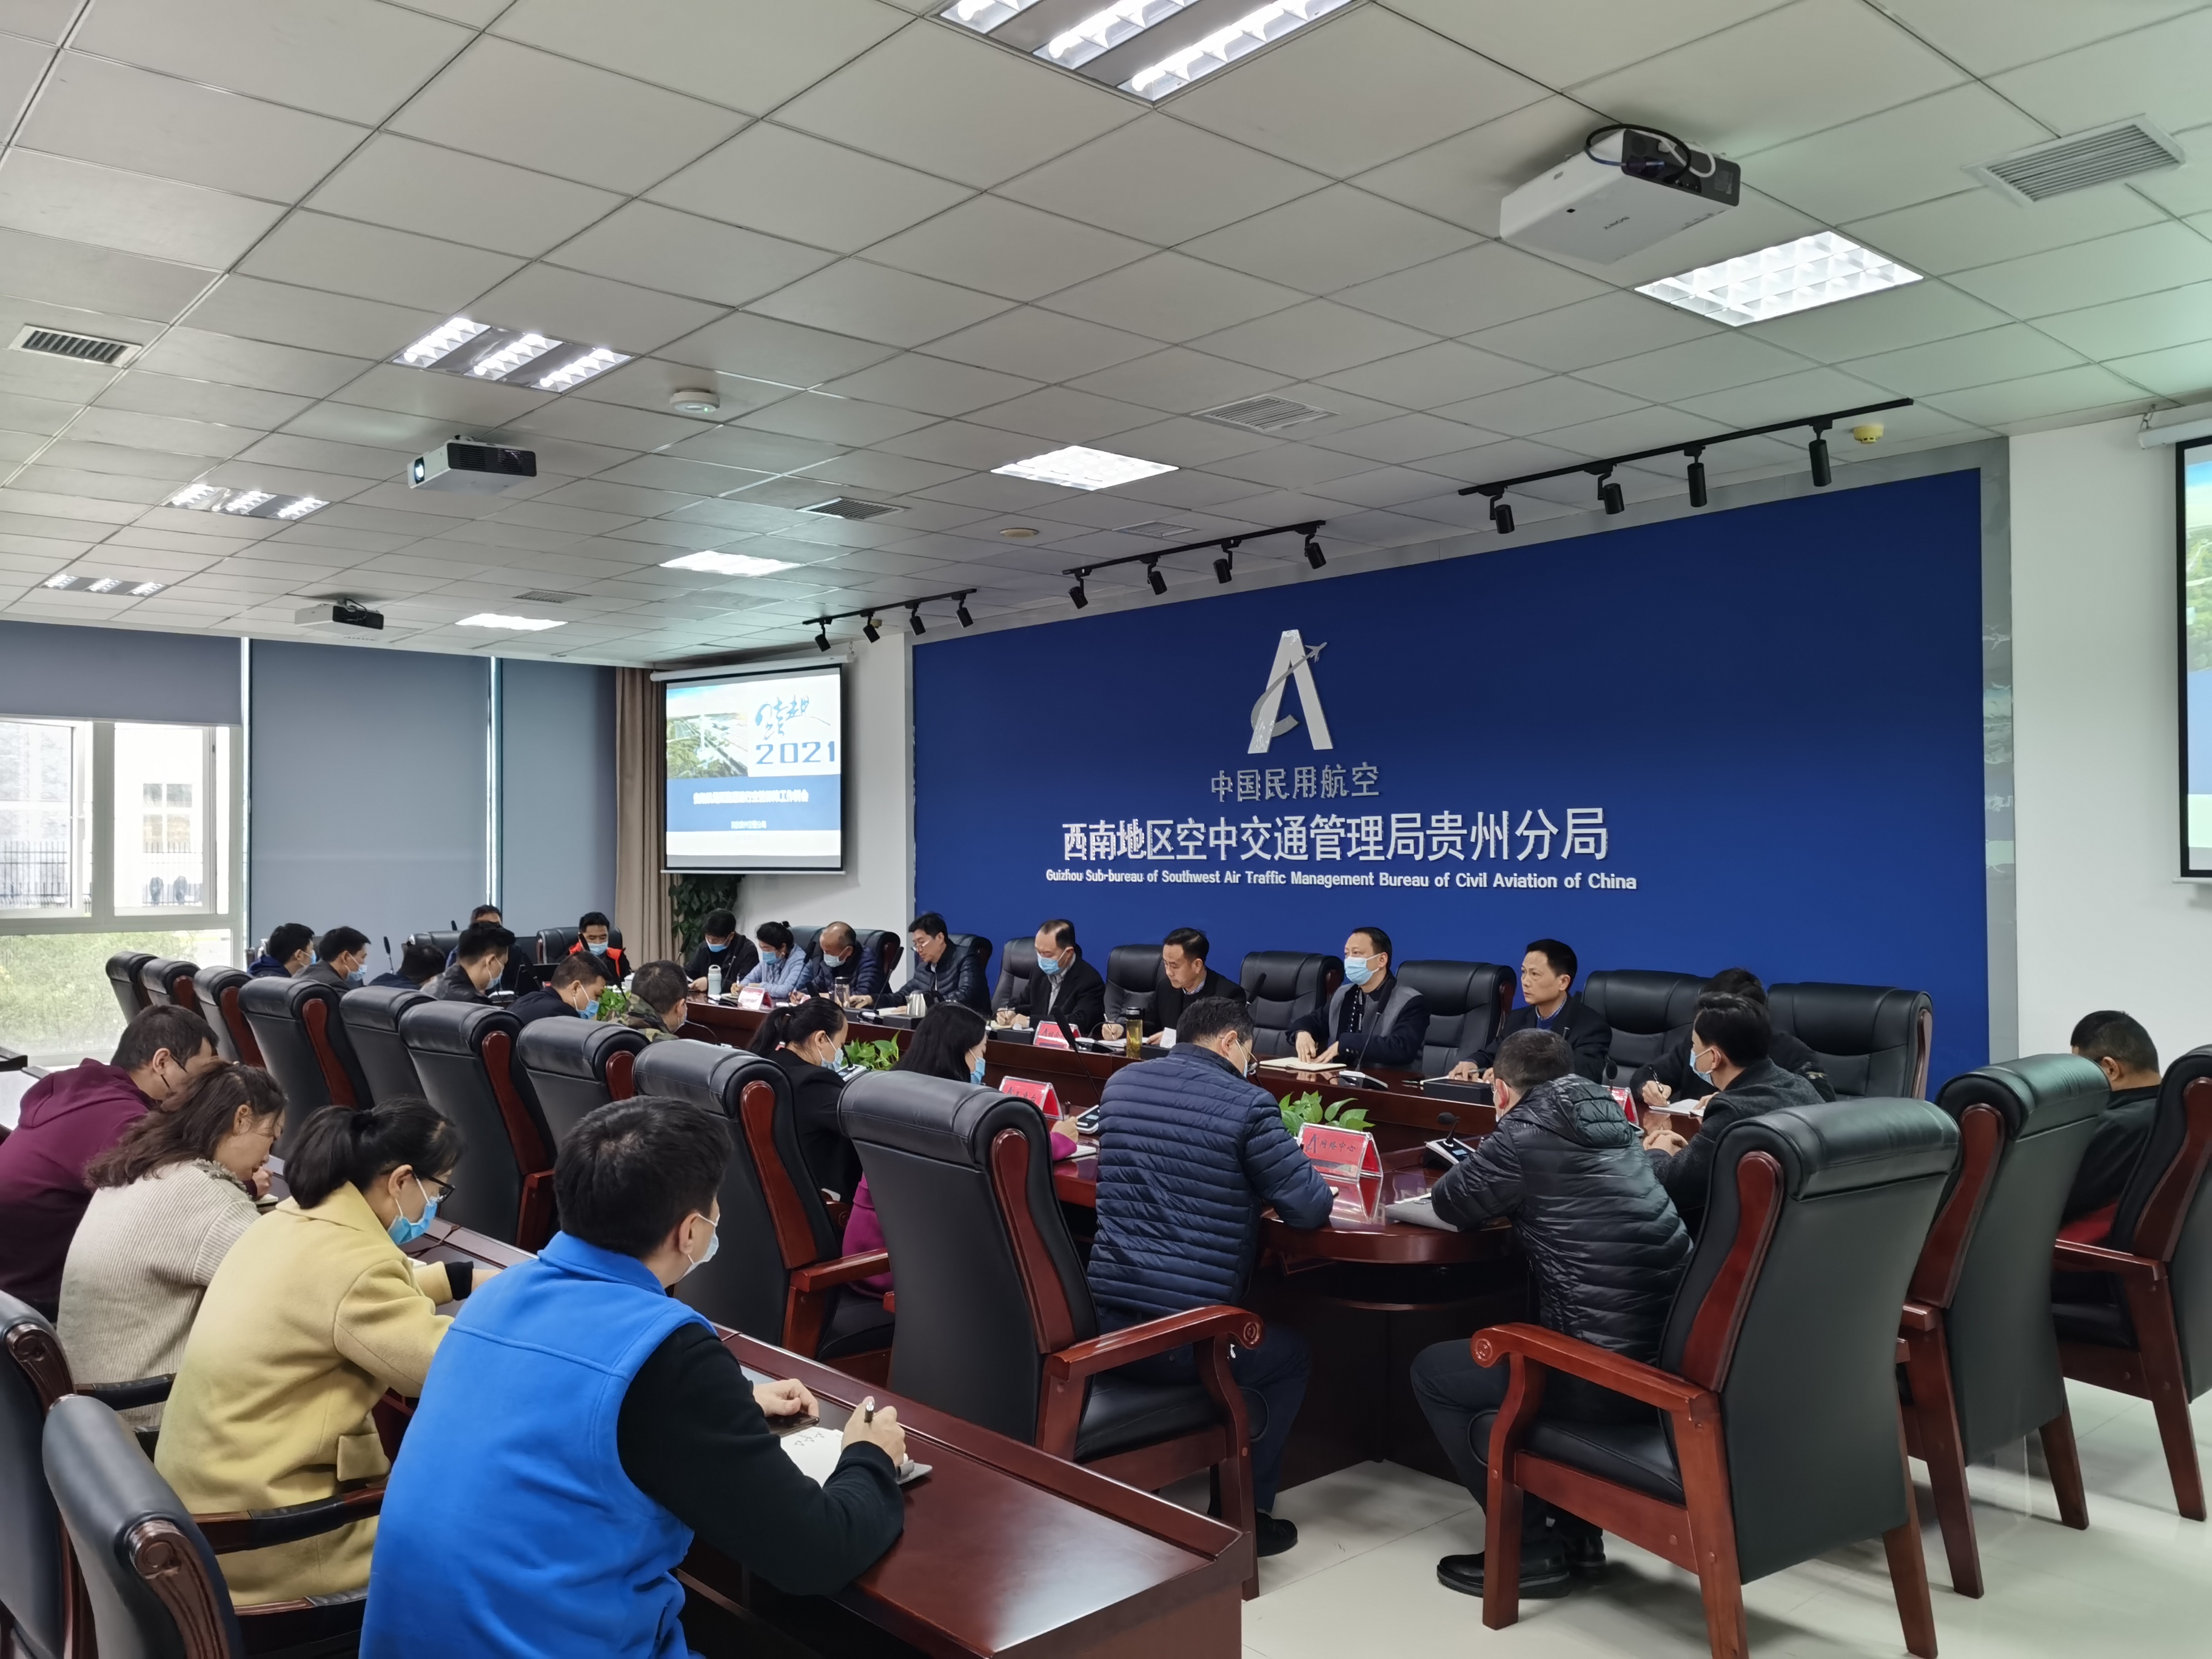 贵州空管分局组织召开全面推进贵阳龙洞堡机场双跑道运行阶段空管保障准备工作启动会